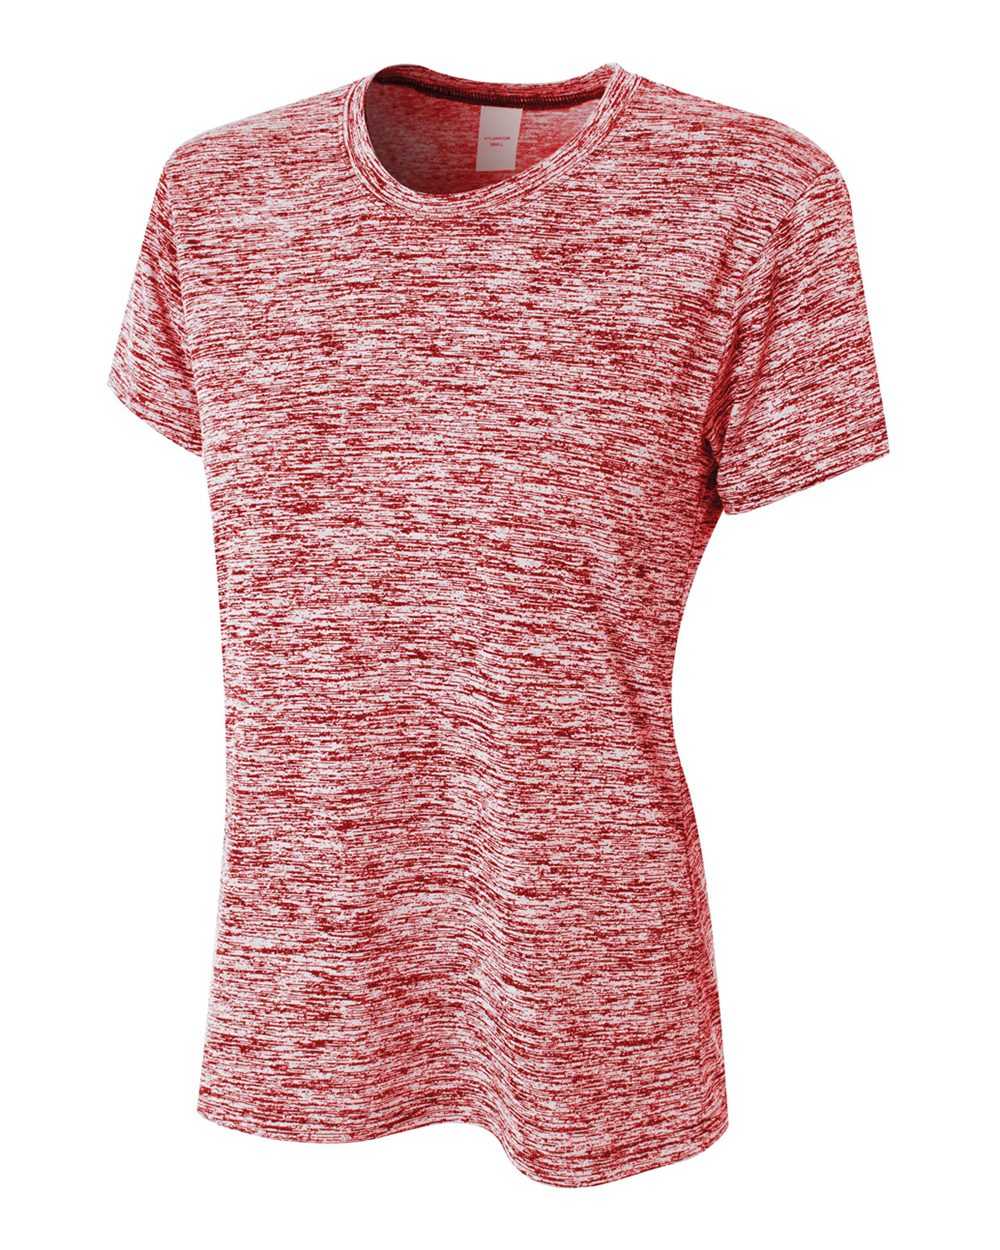 A4 NW3296 Women's Space Dye Tech Shirt - Scarlet - HIT a Double